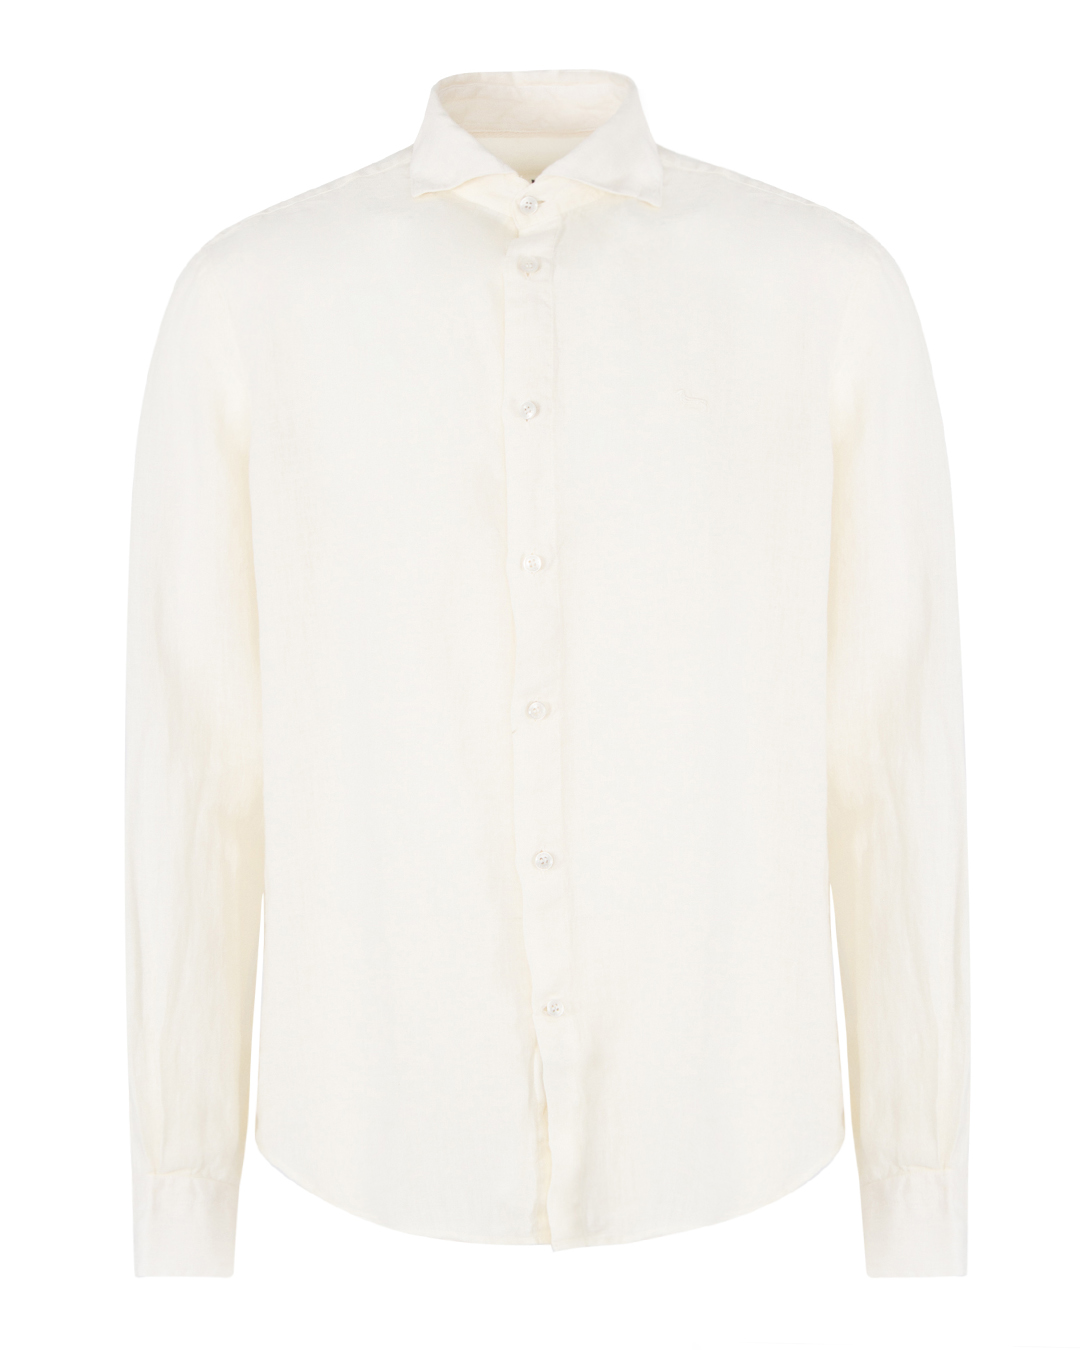 рубашка Harmont & Blaine CRL001 белый xl, размер xl